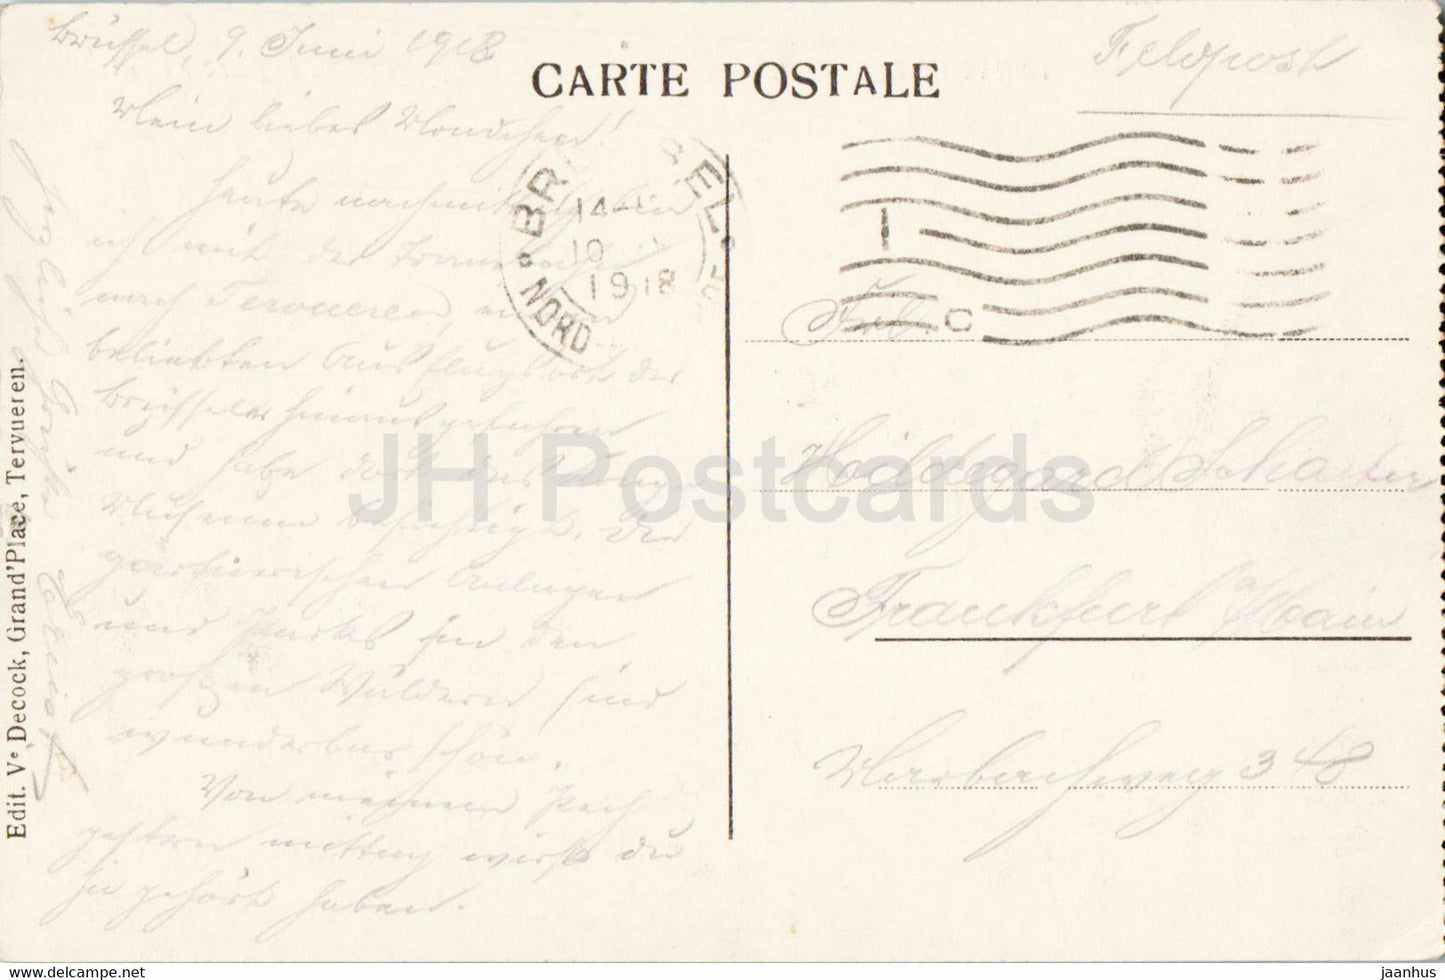 Tervueren - Tervuren - Les Grands Bassins et le pont dans le parc Royal - carte postale ancienne - 1918 - Belgique - occasion